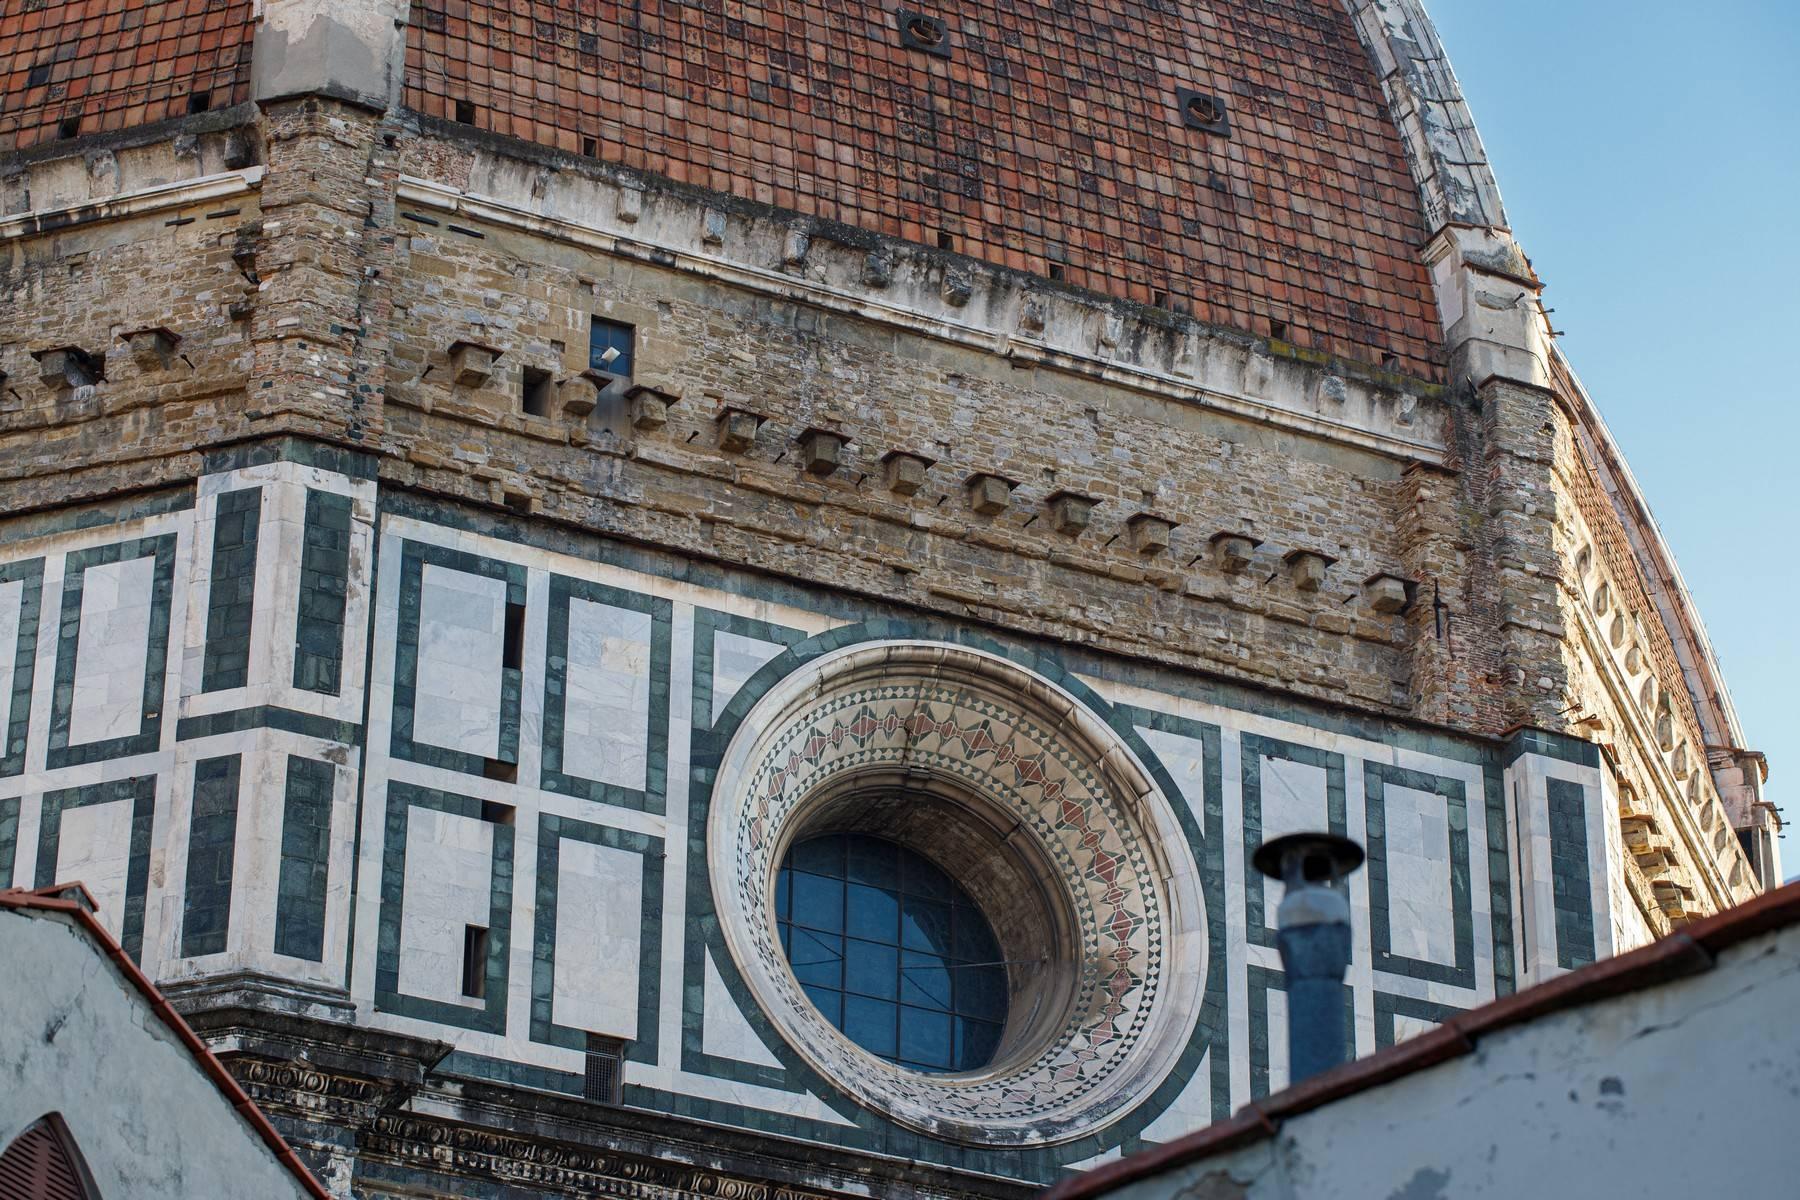 Attico con vista monumentale sul Duomo - 17